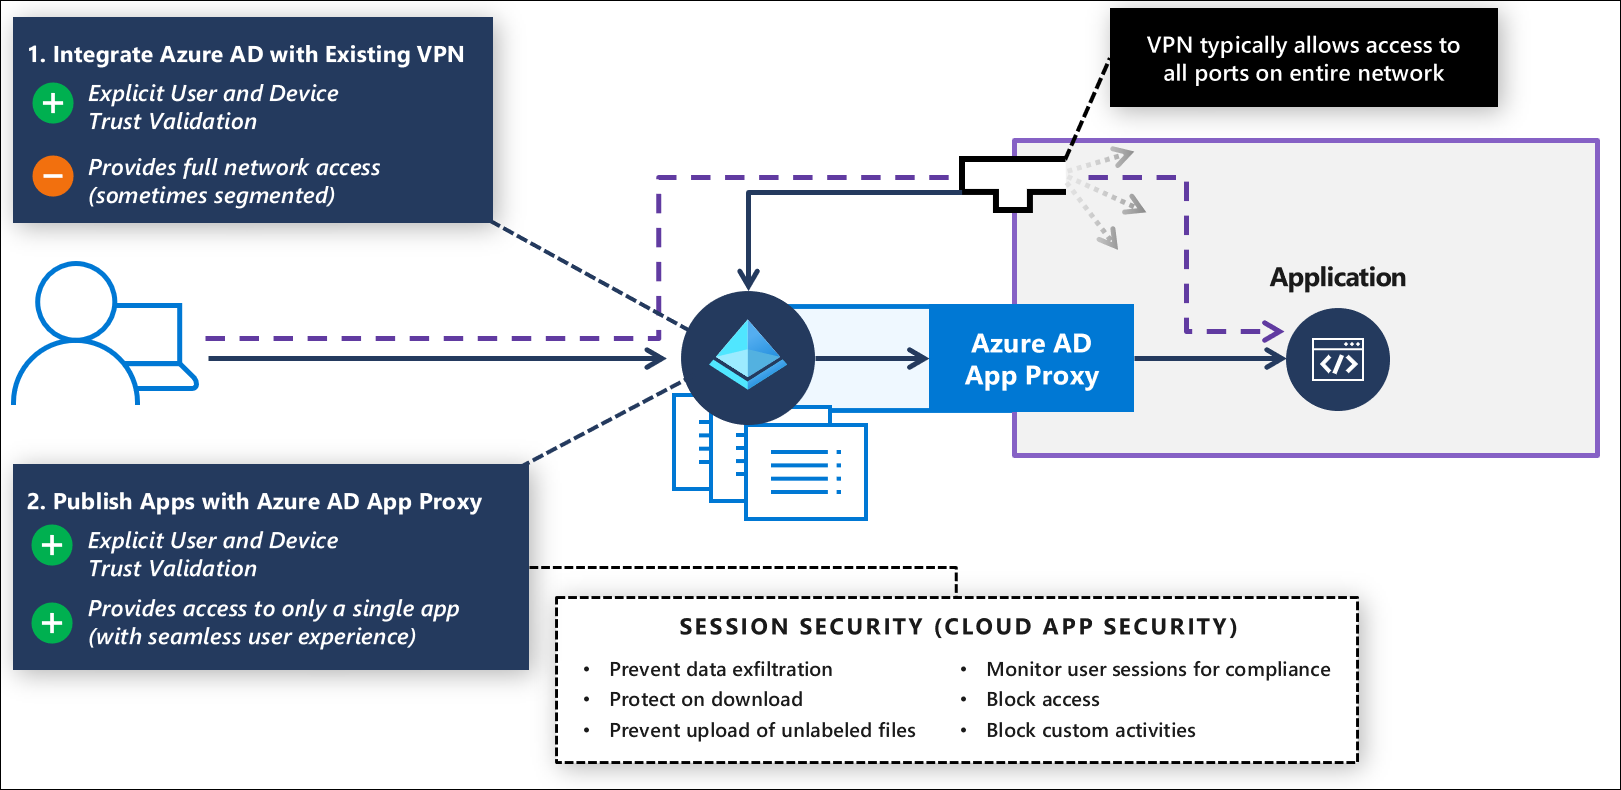 Modernize a autenticação VPN e mova aplicativos para acesso moderno